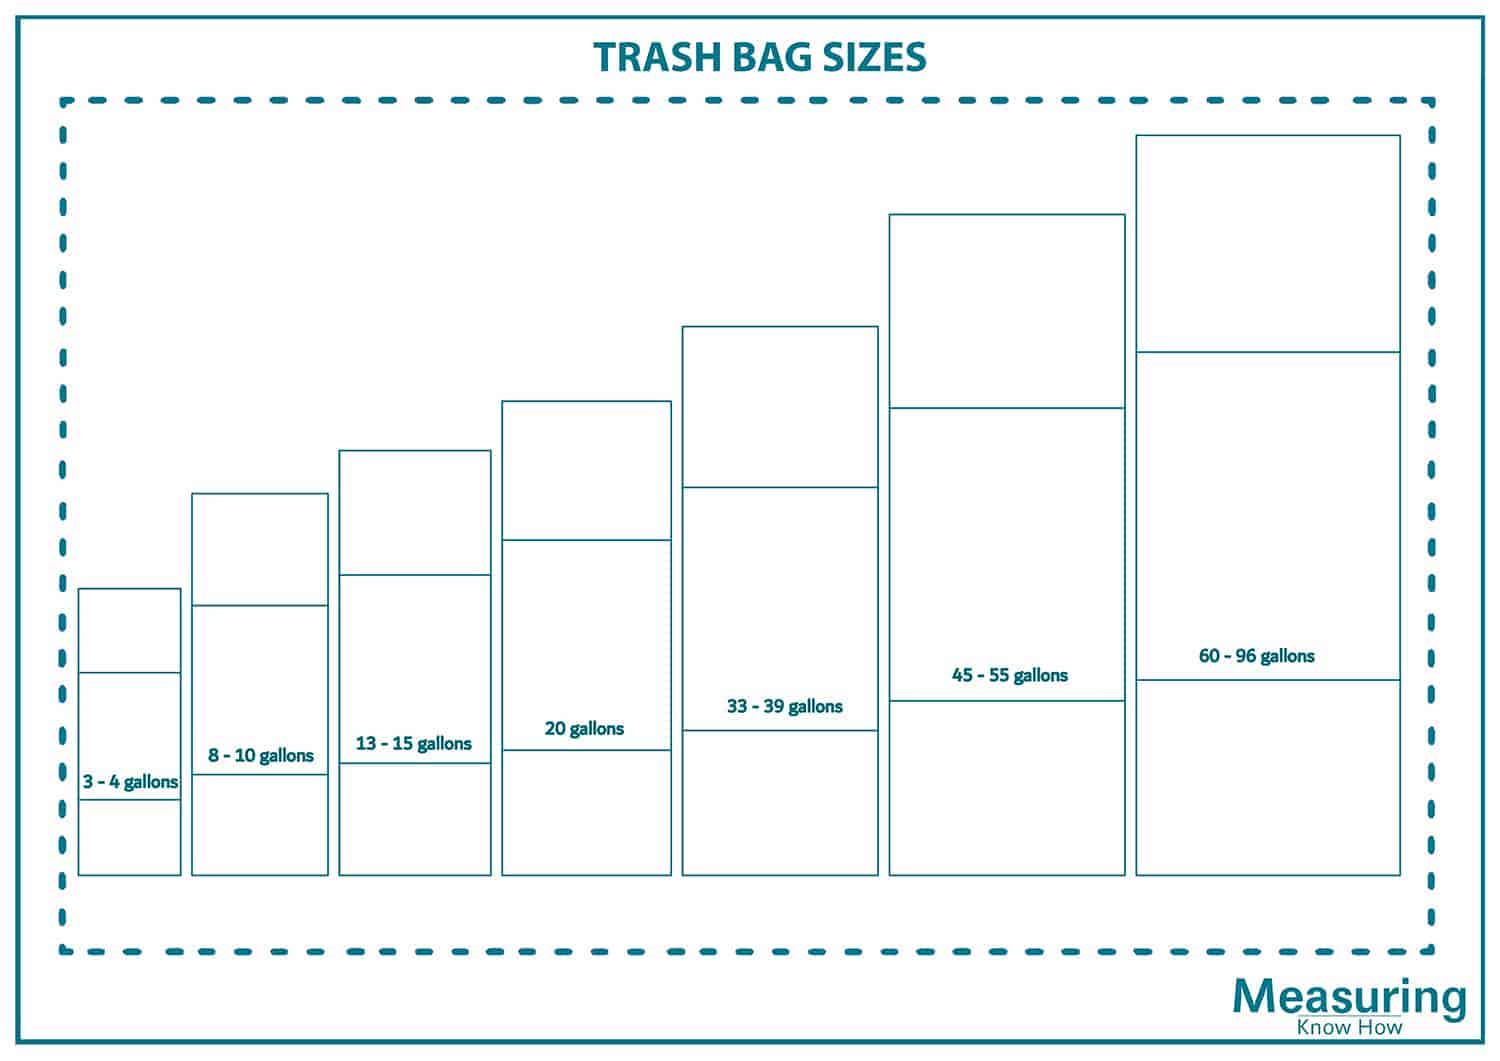 Trash bag sizes